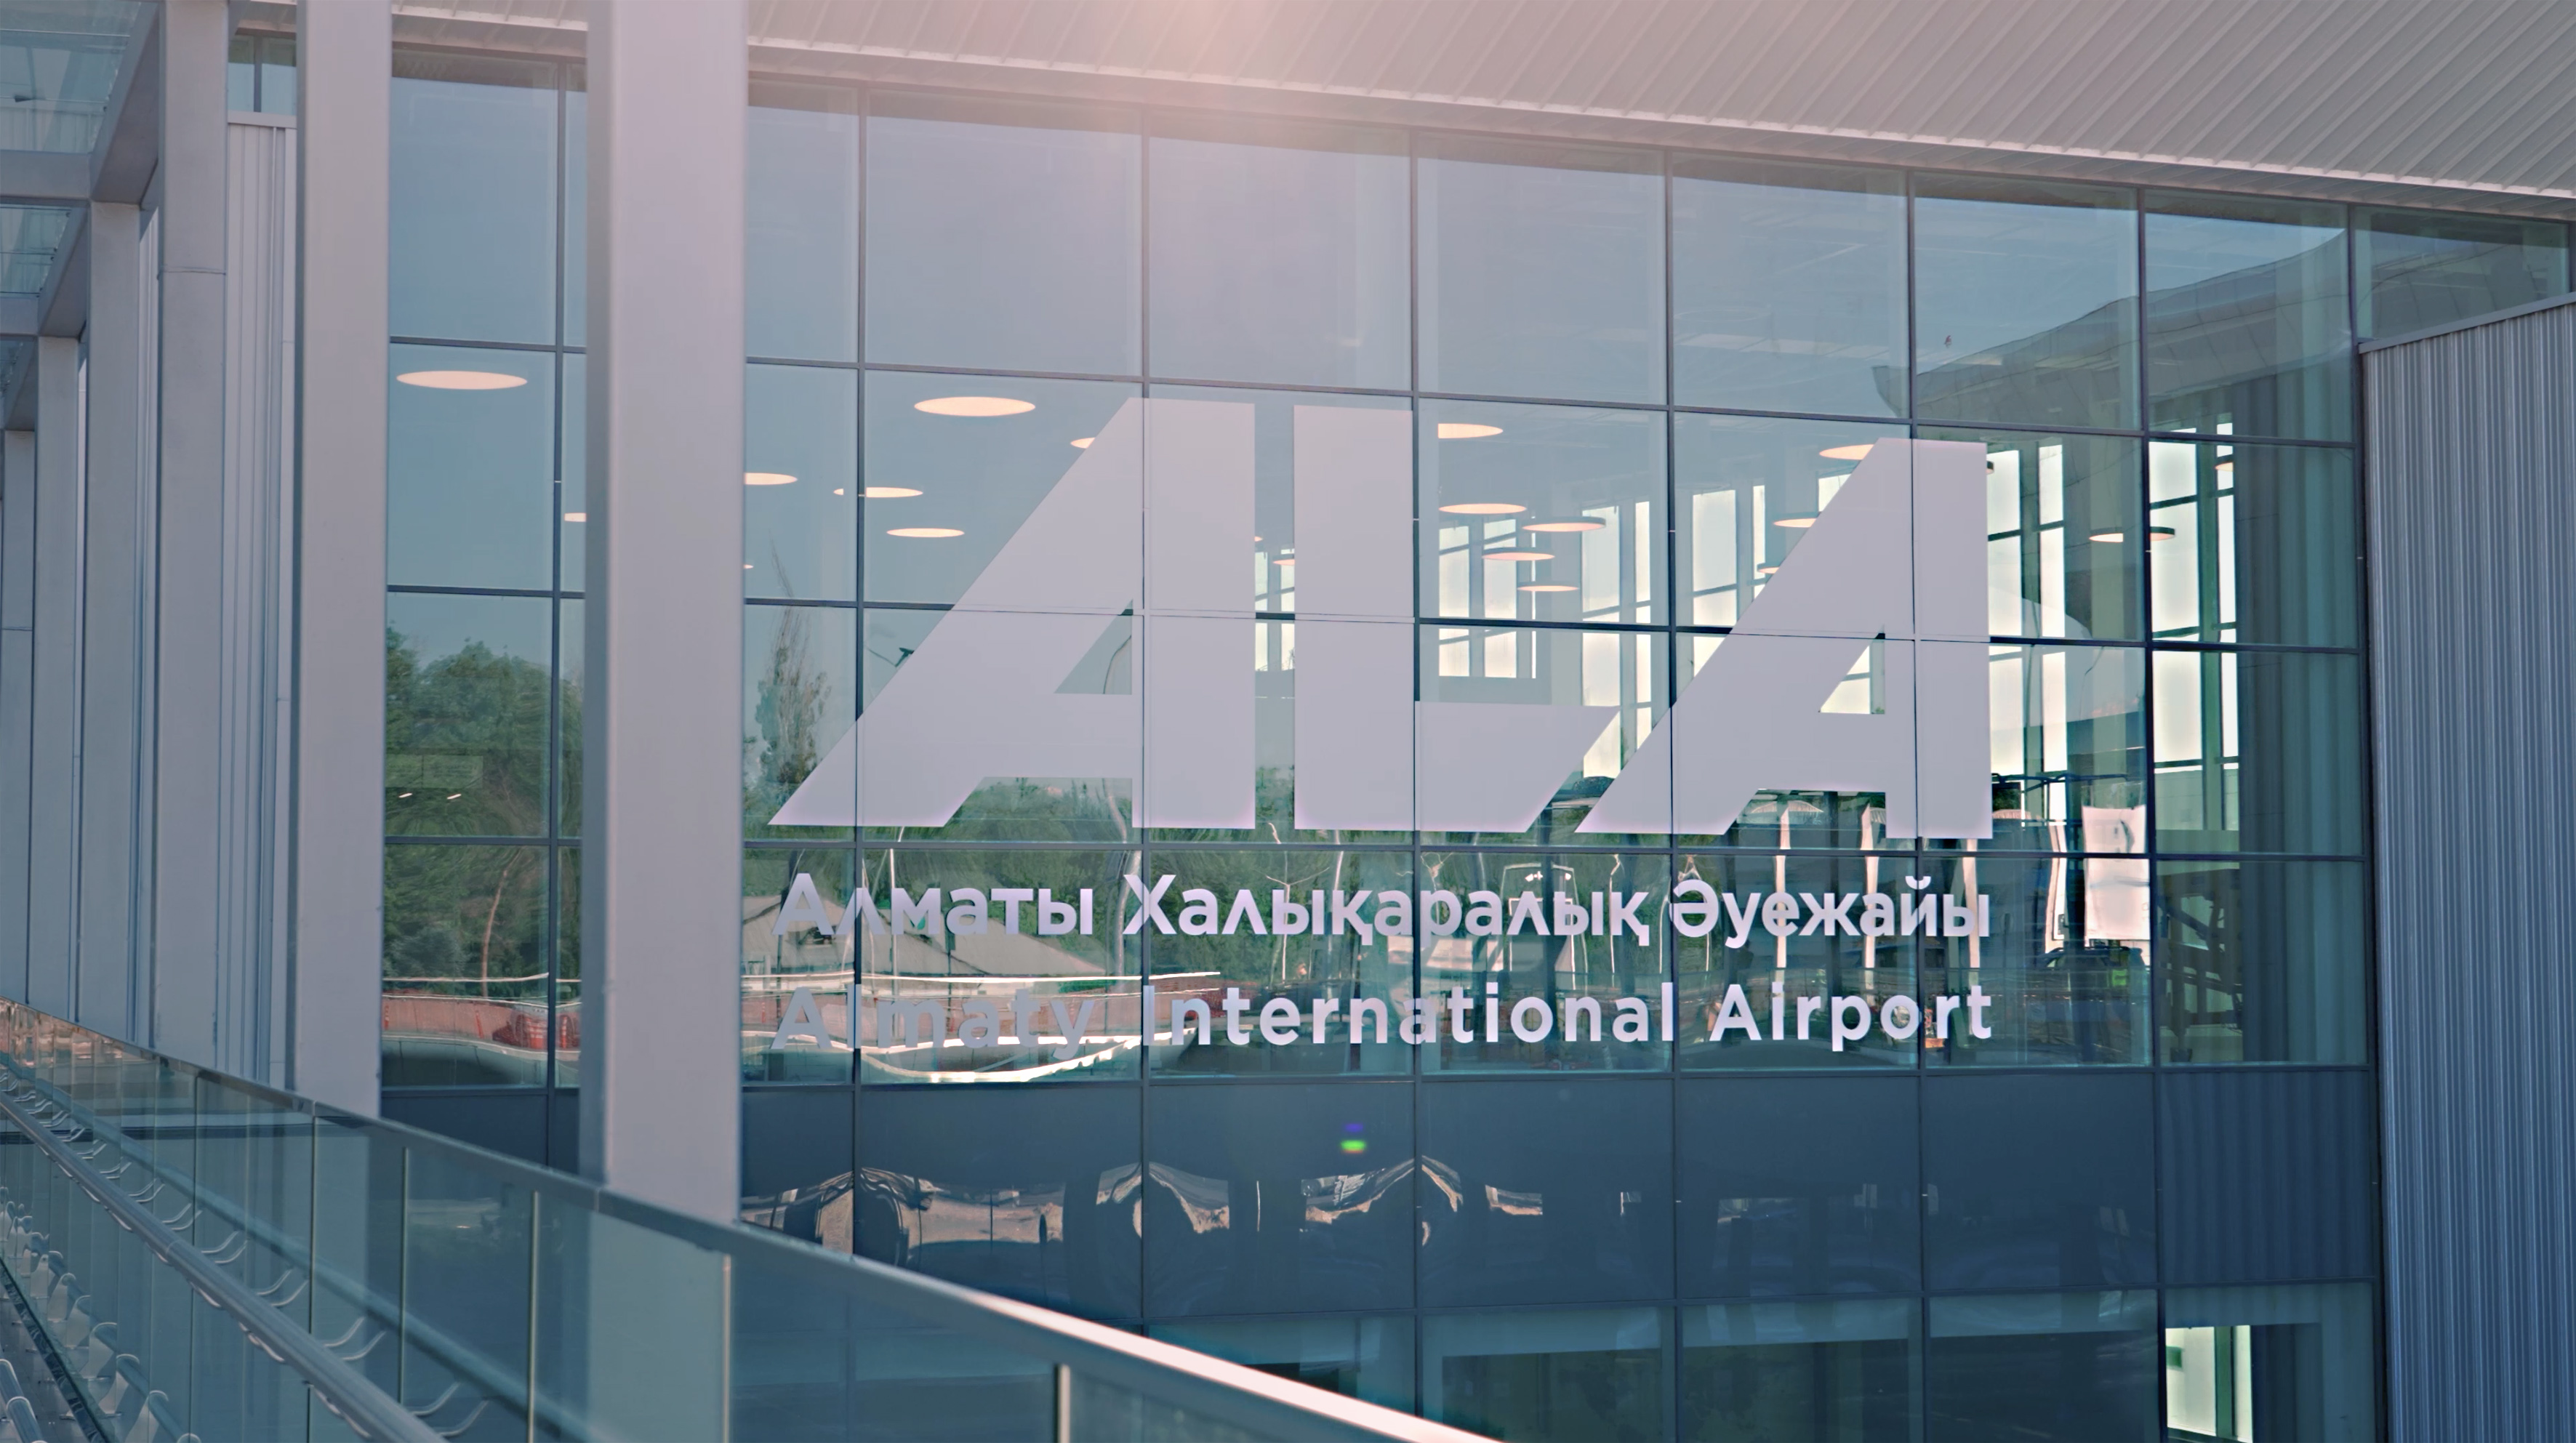 Almatı Havalimanı